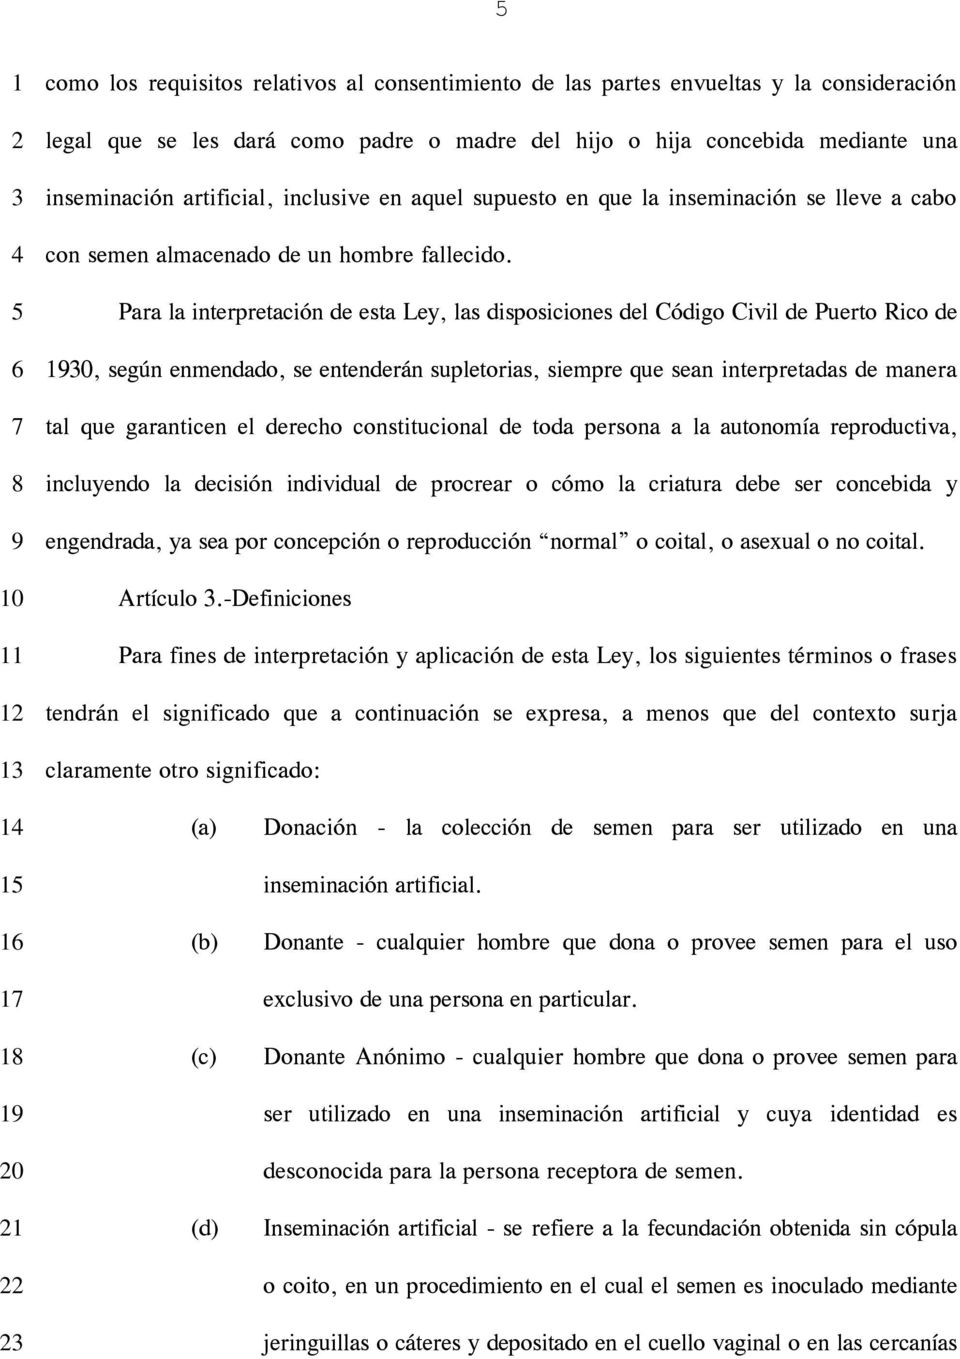 Para la interpretación de esta Ley, las disposiciones del Código Civil de Puerto Rico de 0, según enmendado, se entenderán supletorias, siempre que sean interpretadas de manera tal que garanticen el